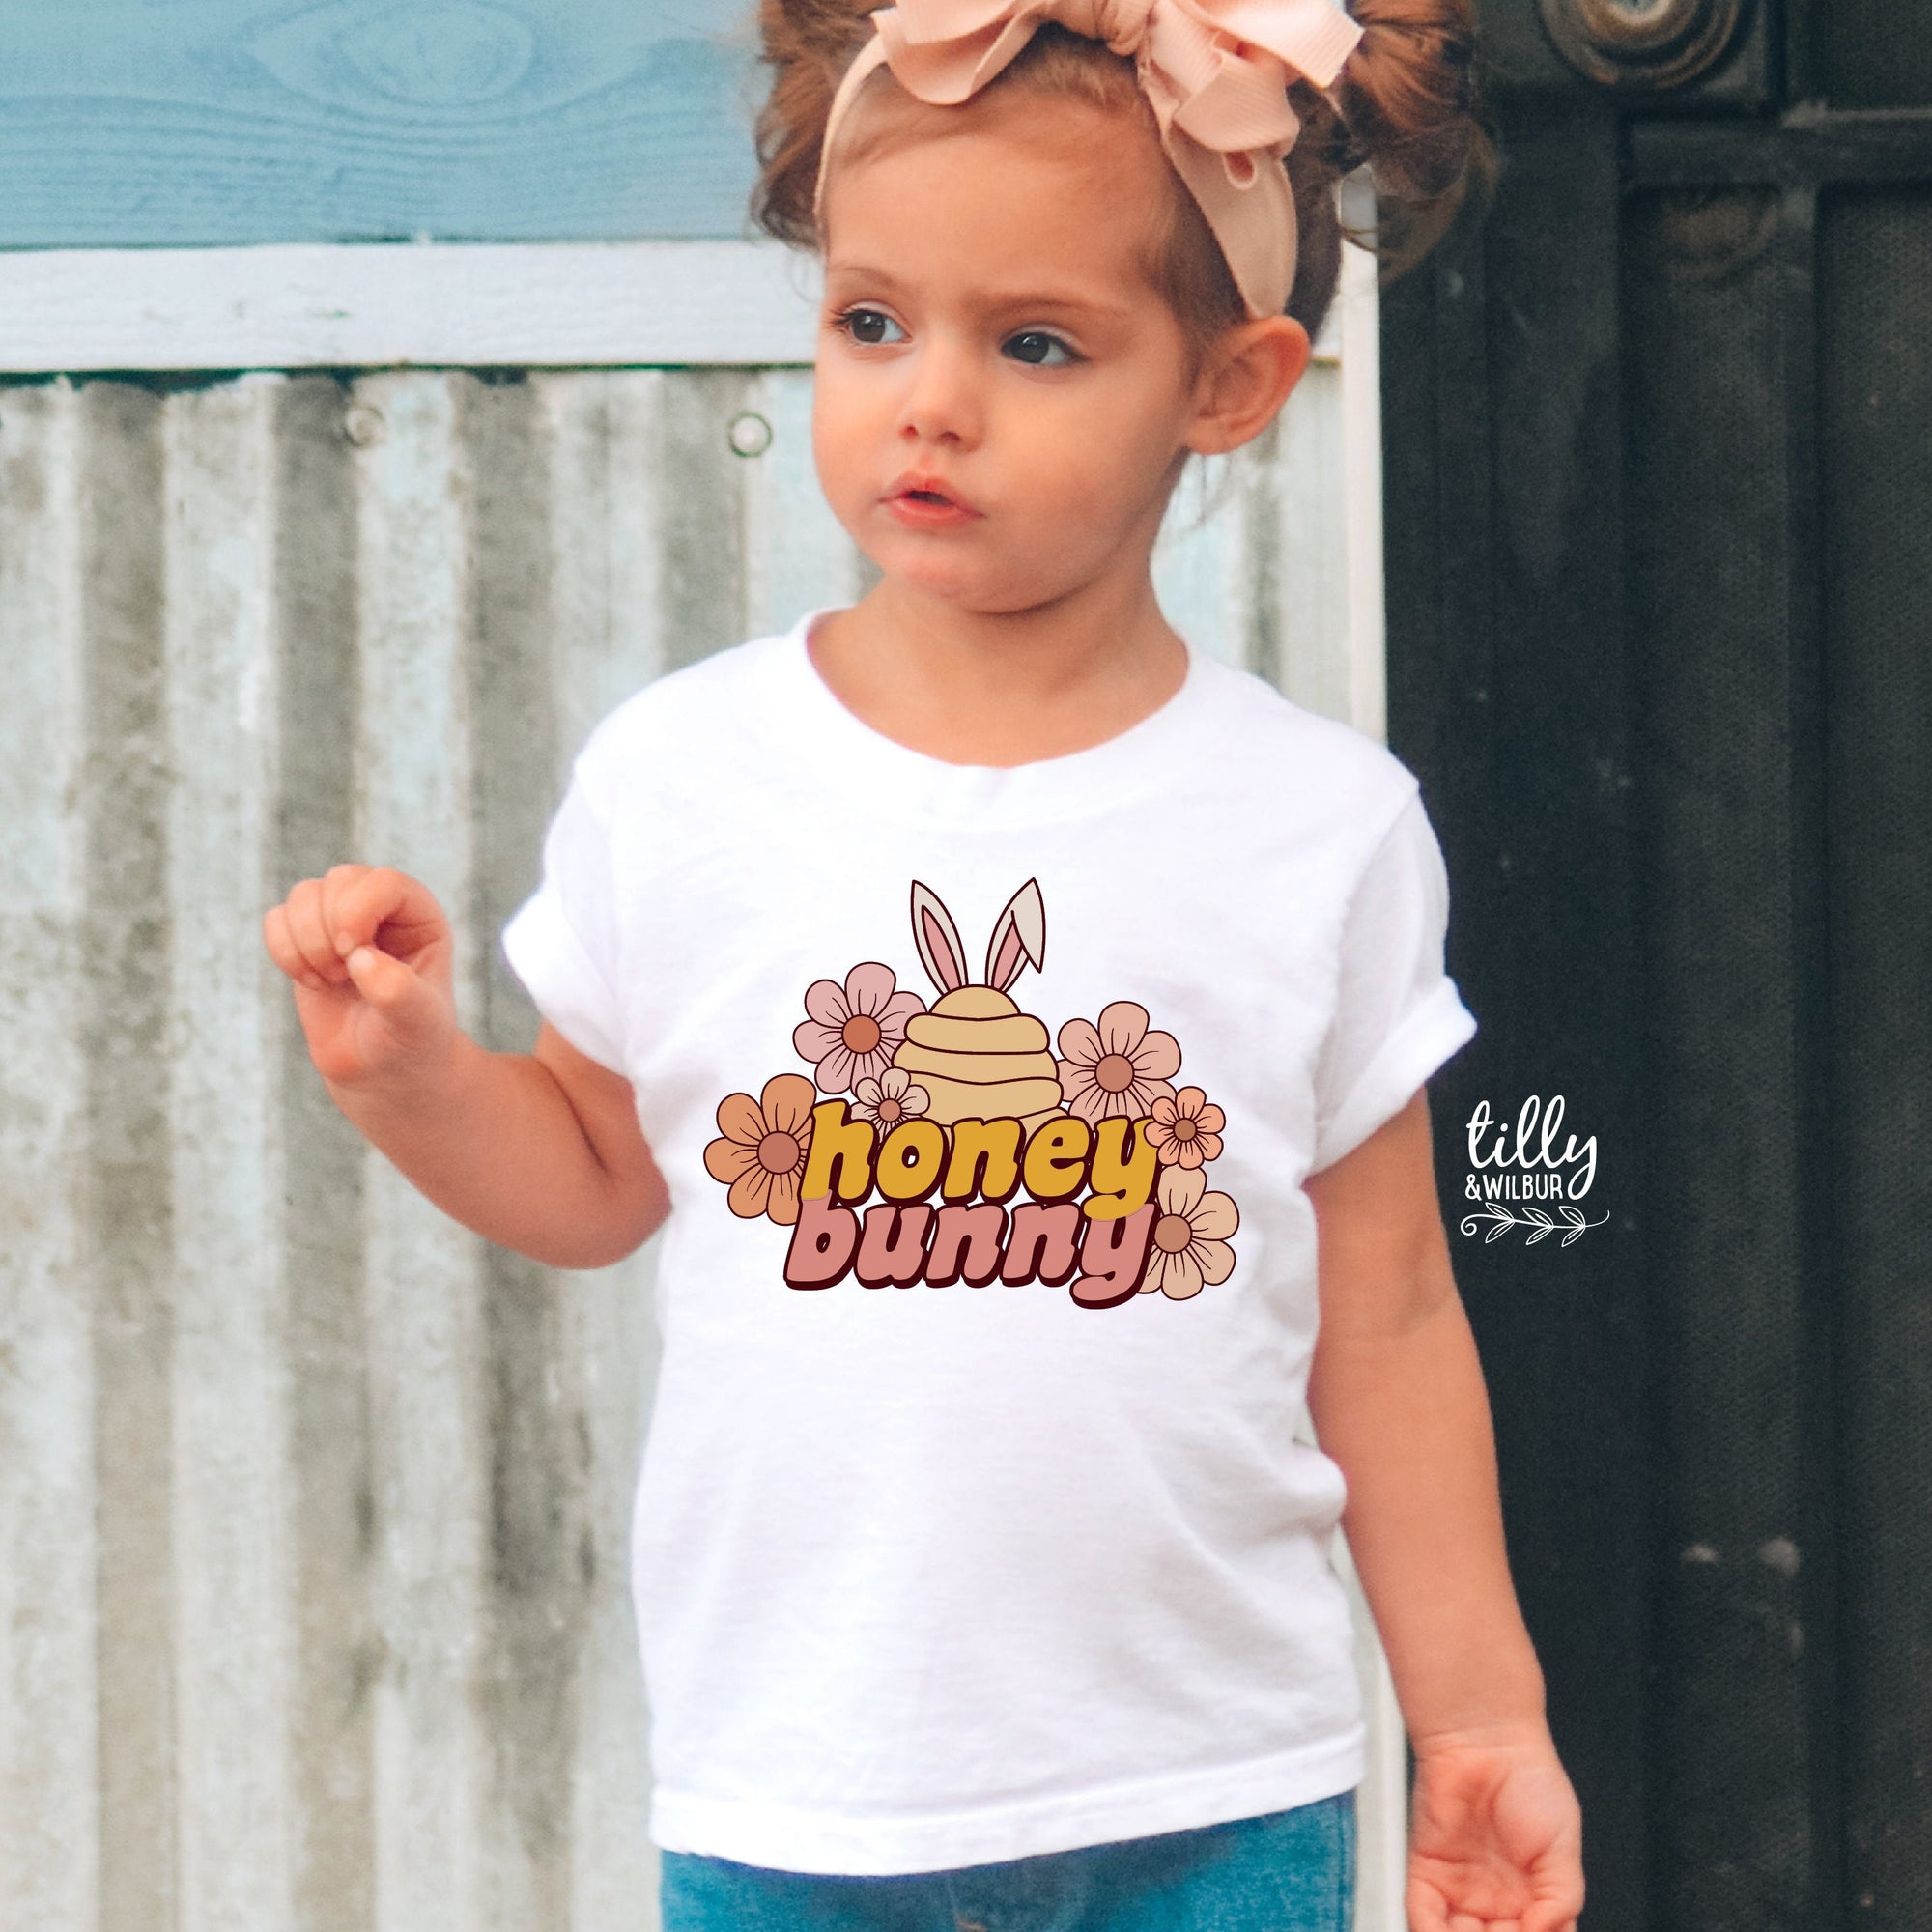 Easter T-Shirt For Girls, Honey Bunny Girls Easter T-Shirt, Easter Bunny T-Shirt, Egg Hunt, Easter Gift For Girls, Girls Easter Gift,